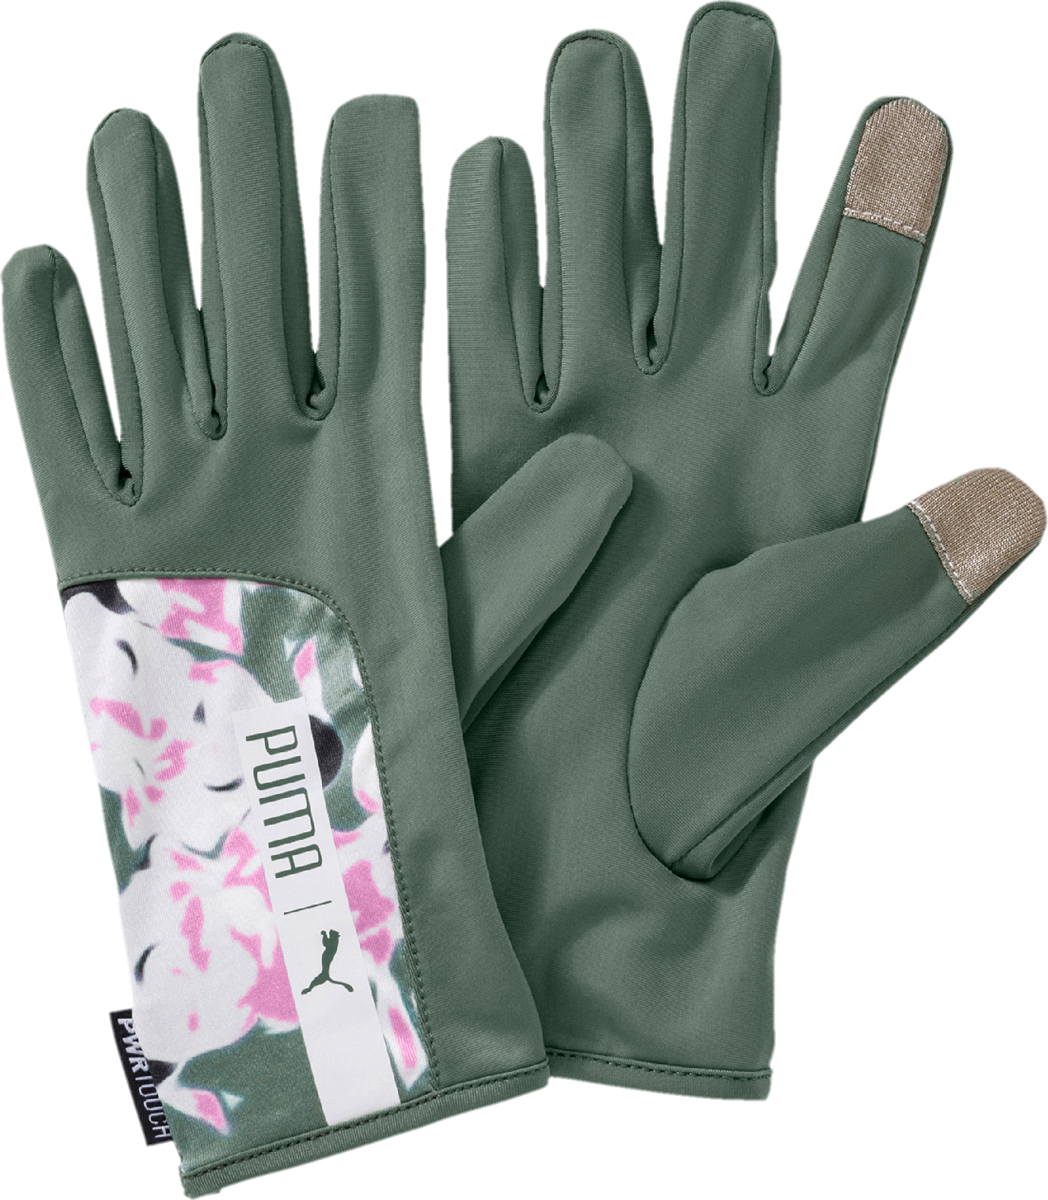 Перчатки женские Puma Pr Womens Gloves, цвет: зеленый, розовый. 04146301. Размер M (7,5)